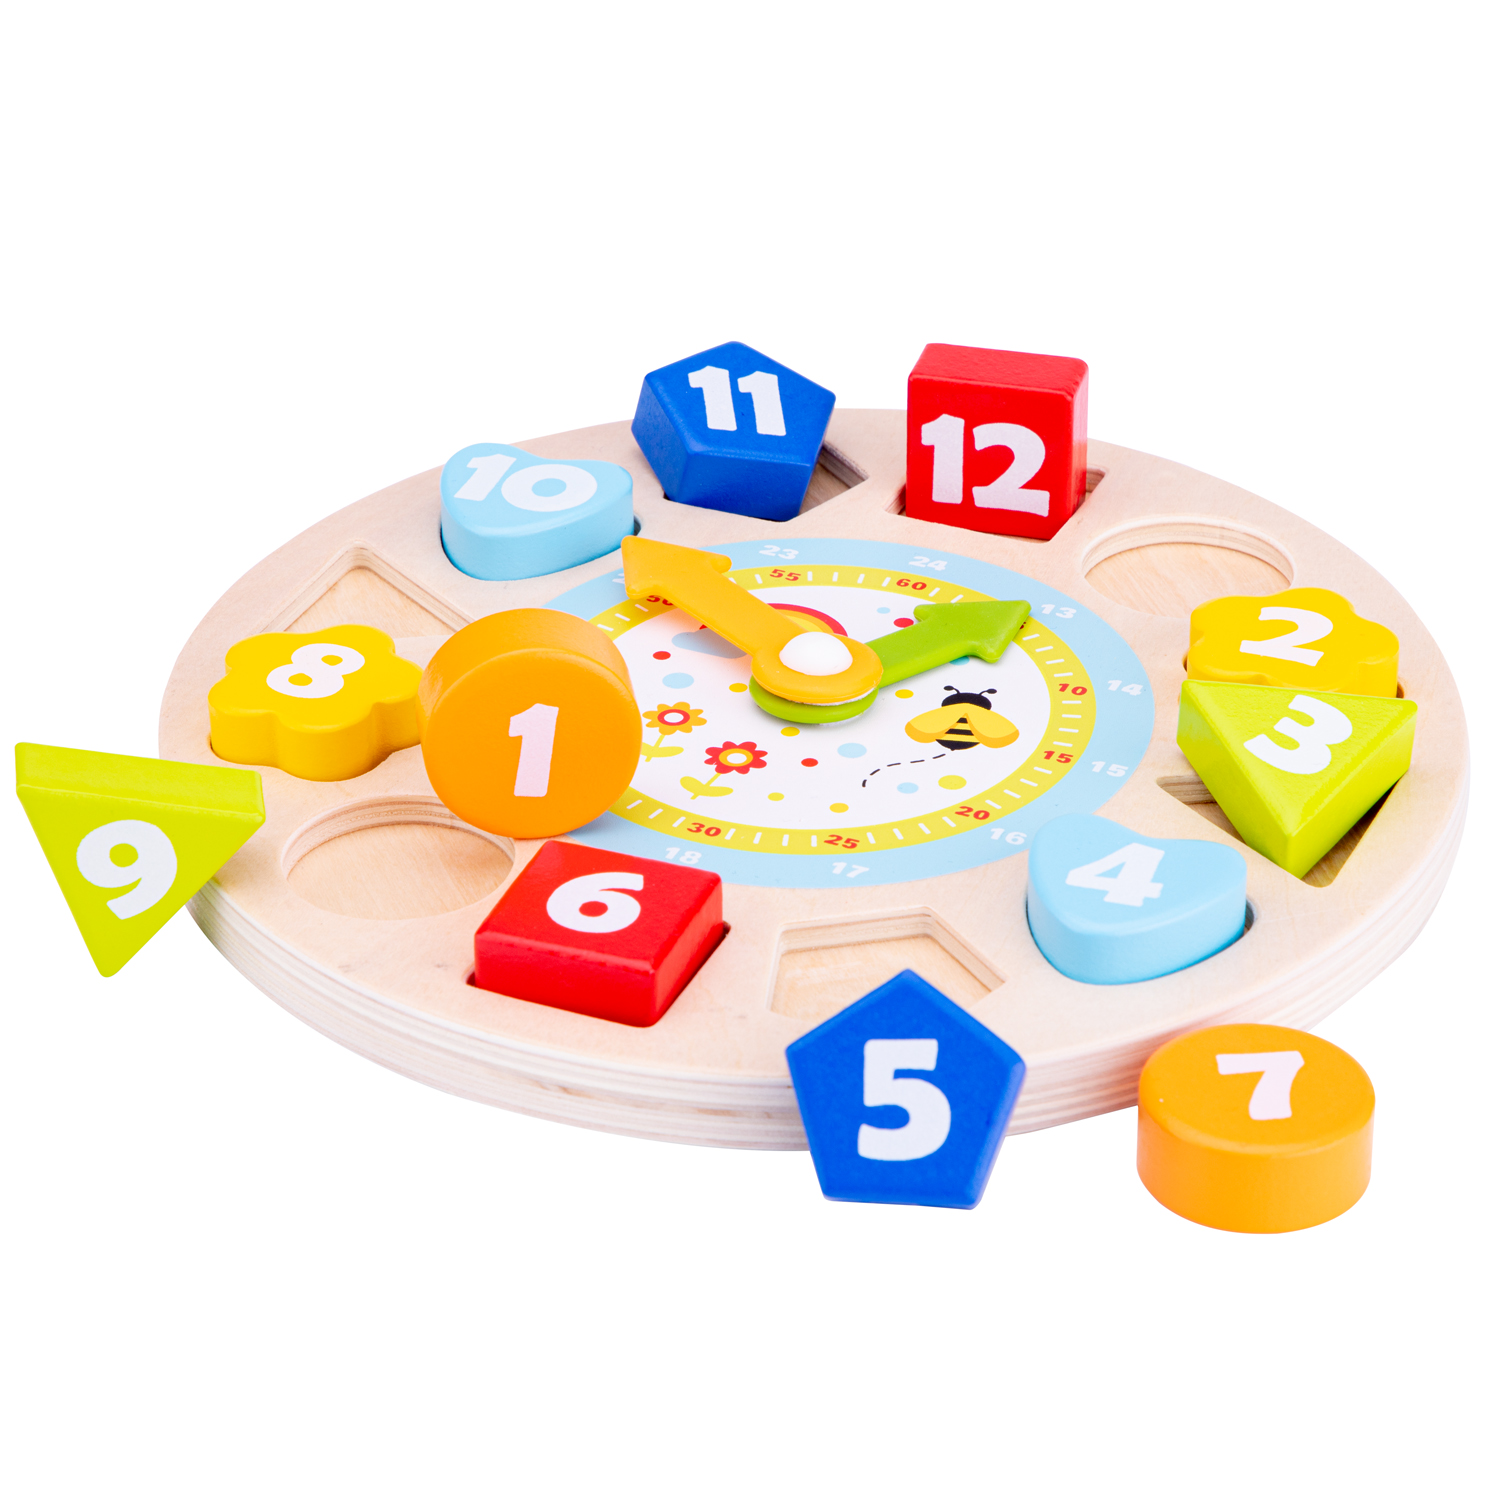 Puzzle Uhr Lernspielzeug für Kinder aus Holz mit Zahlen und Uhrzeiten